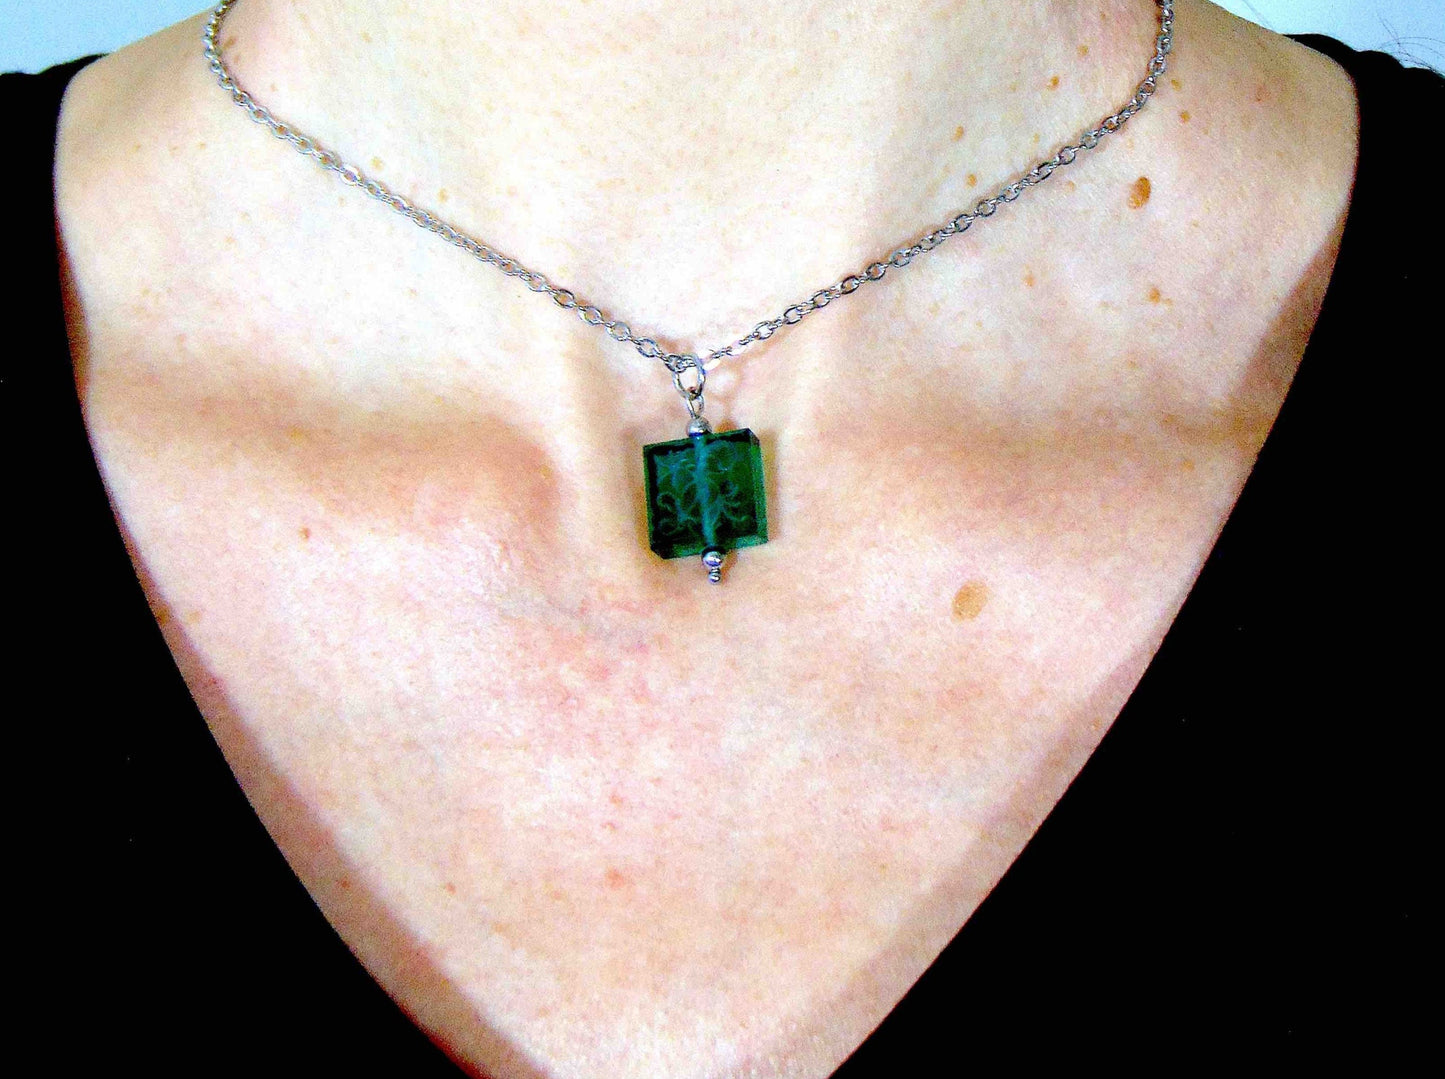 Collier 14 po carré de cristal français vintage vert émeraude, motif de feuilles gravé des 2 côtés, chaîne acier inoxydable